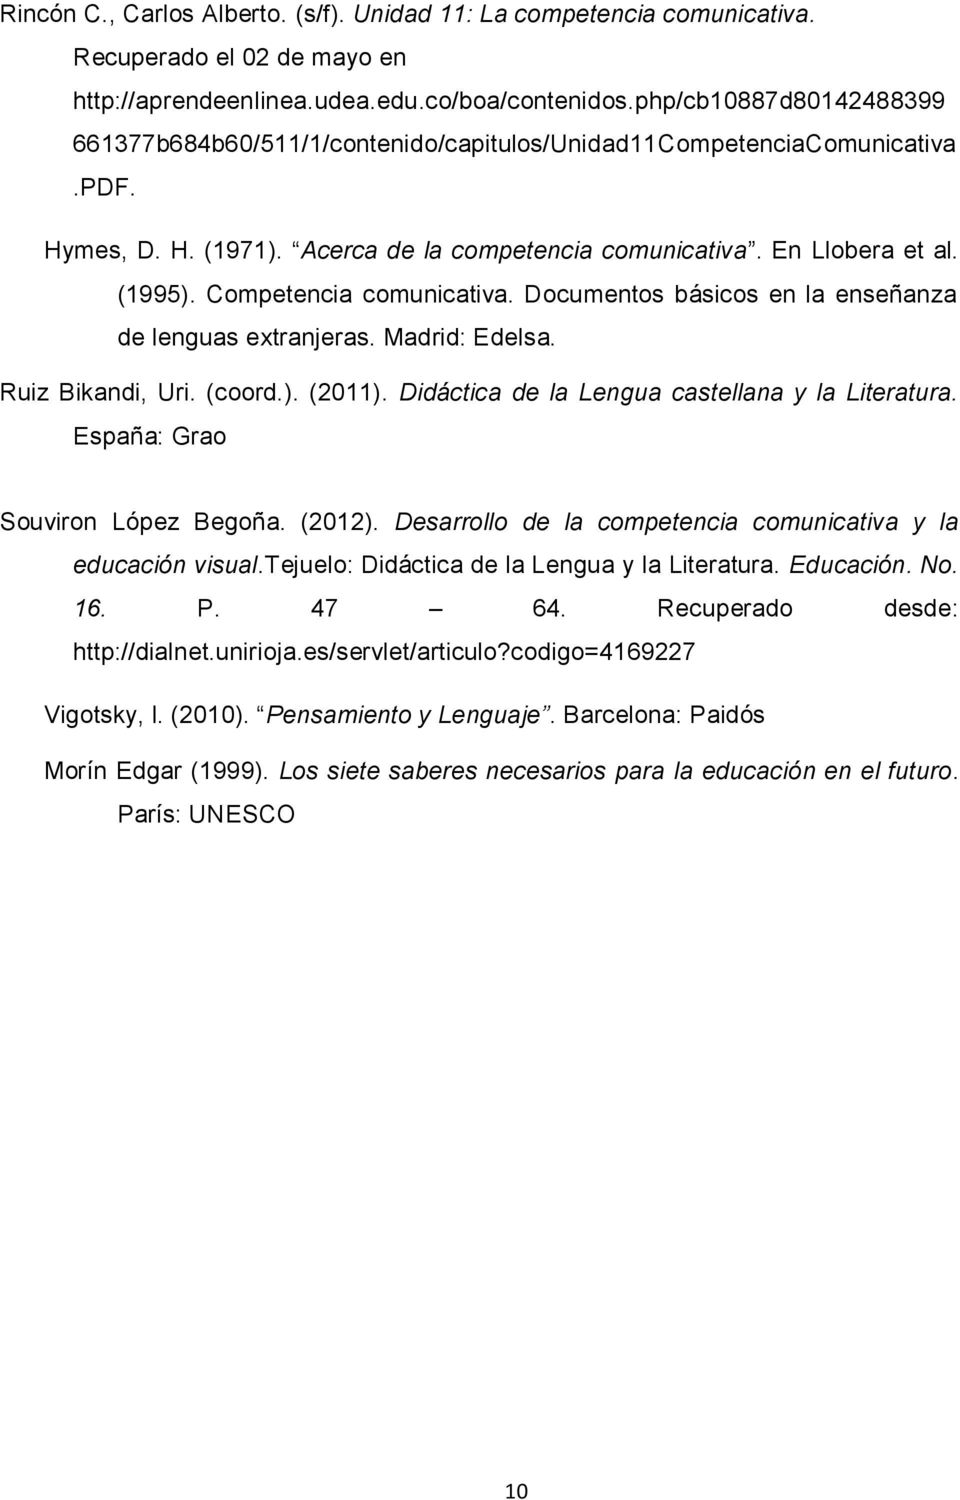 Competencia comunicativa. Documentos básicos en la enseñanza de lenguas extranjeras. Madrid: Edelsa. Ruiz Bikandi, Uri. (coord.). (2011). Didáctica de la Lengua castellana y la Literatura.